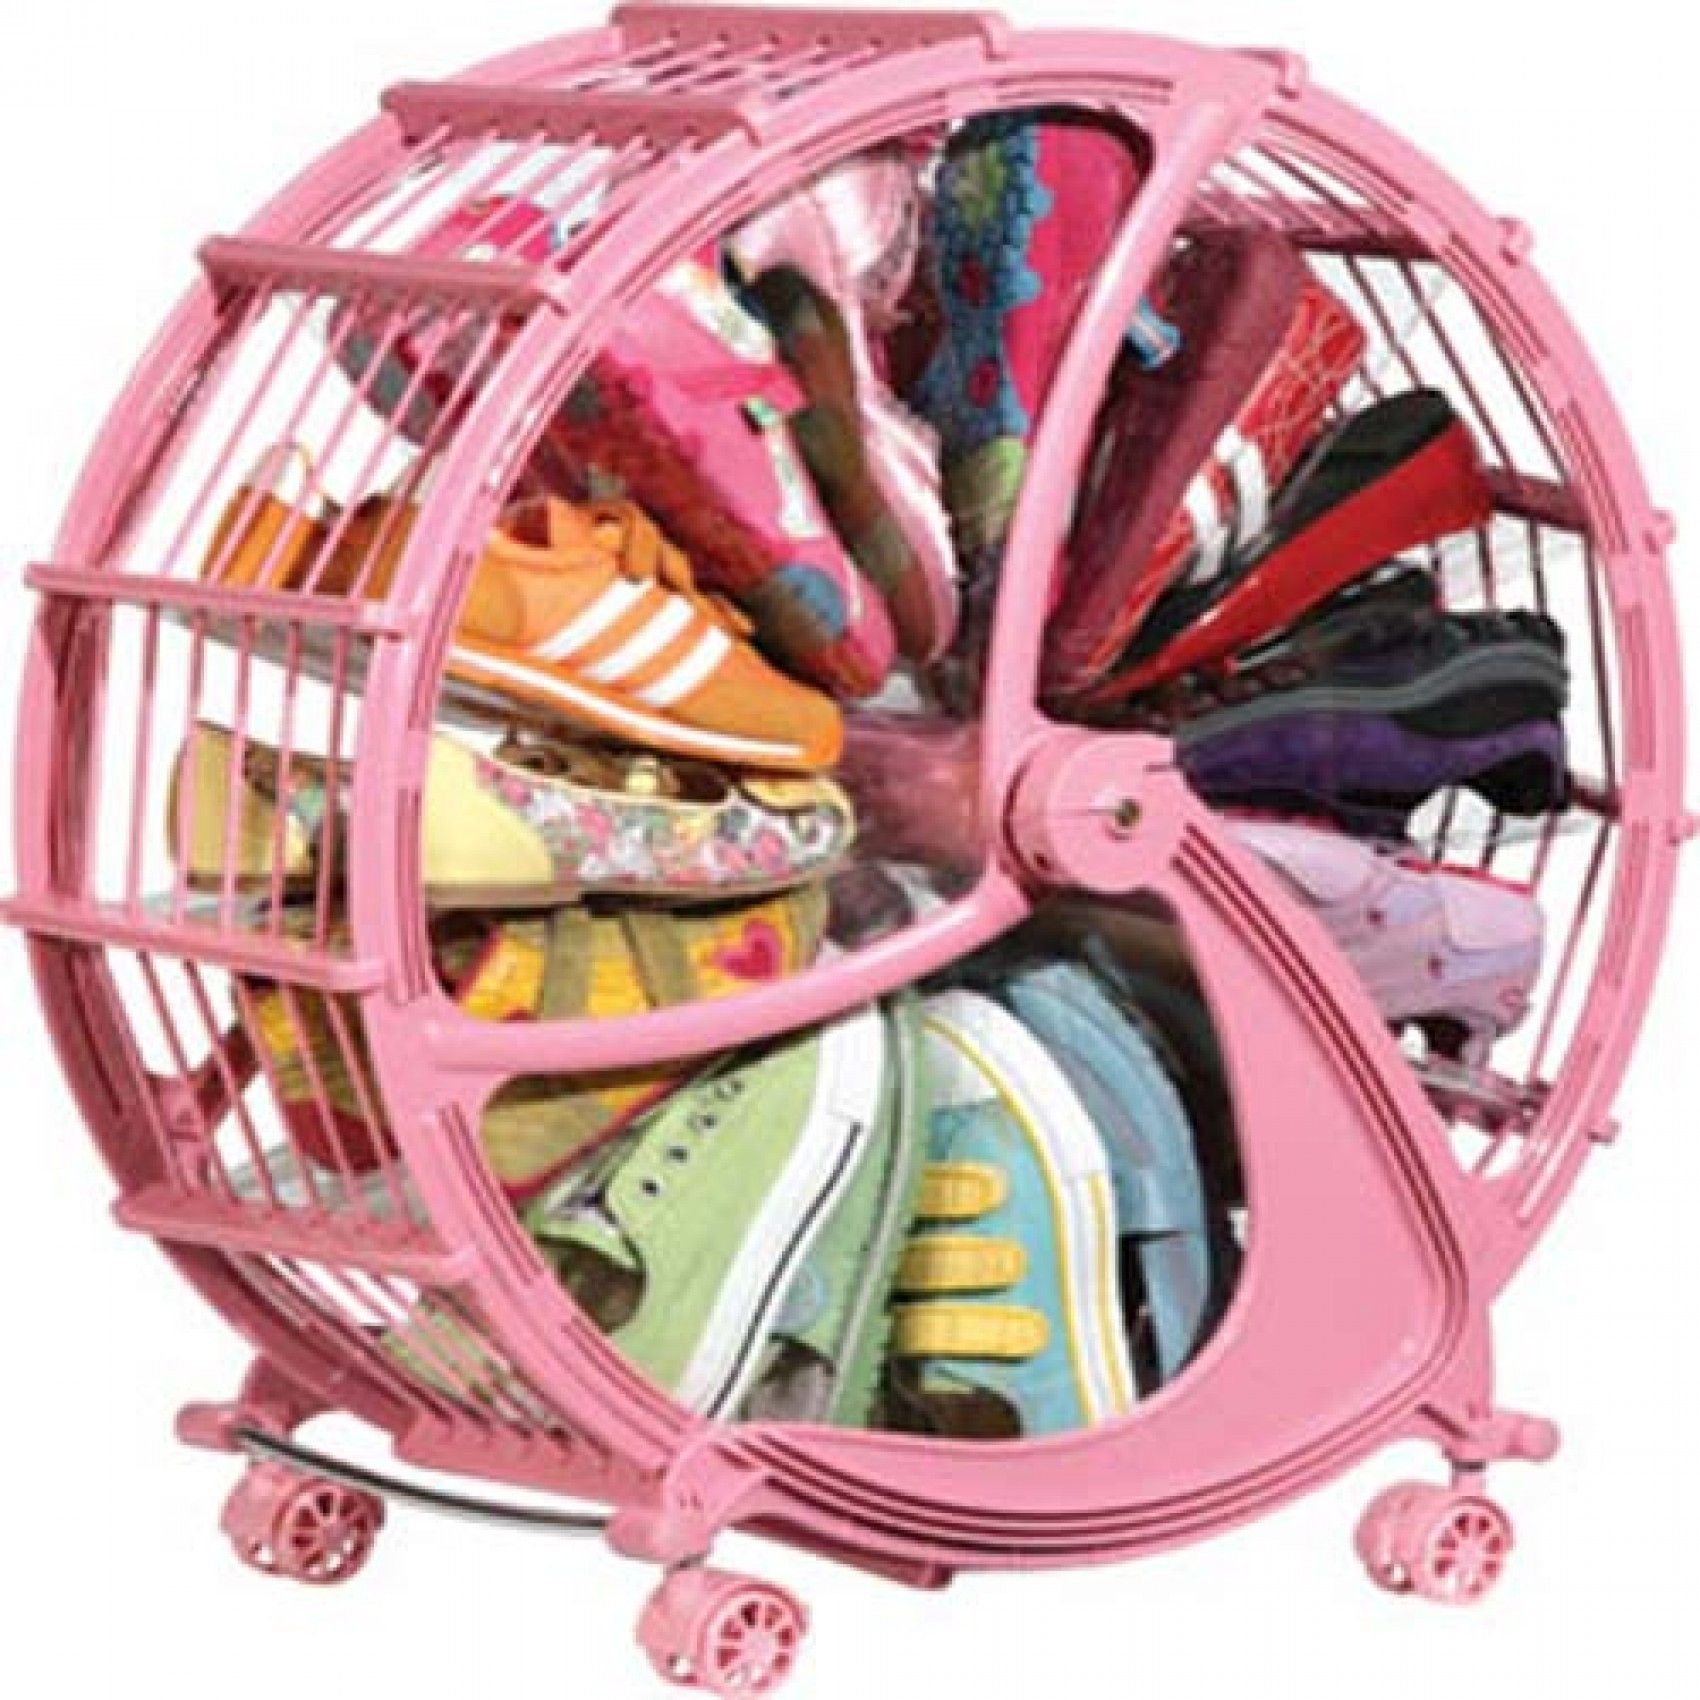 Childrens Shoe Storage
 56cm 12 Pairs Shoe Wheel Storage Pink